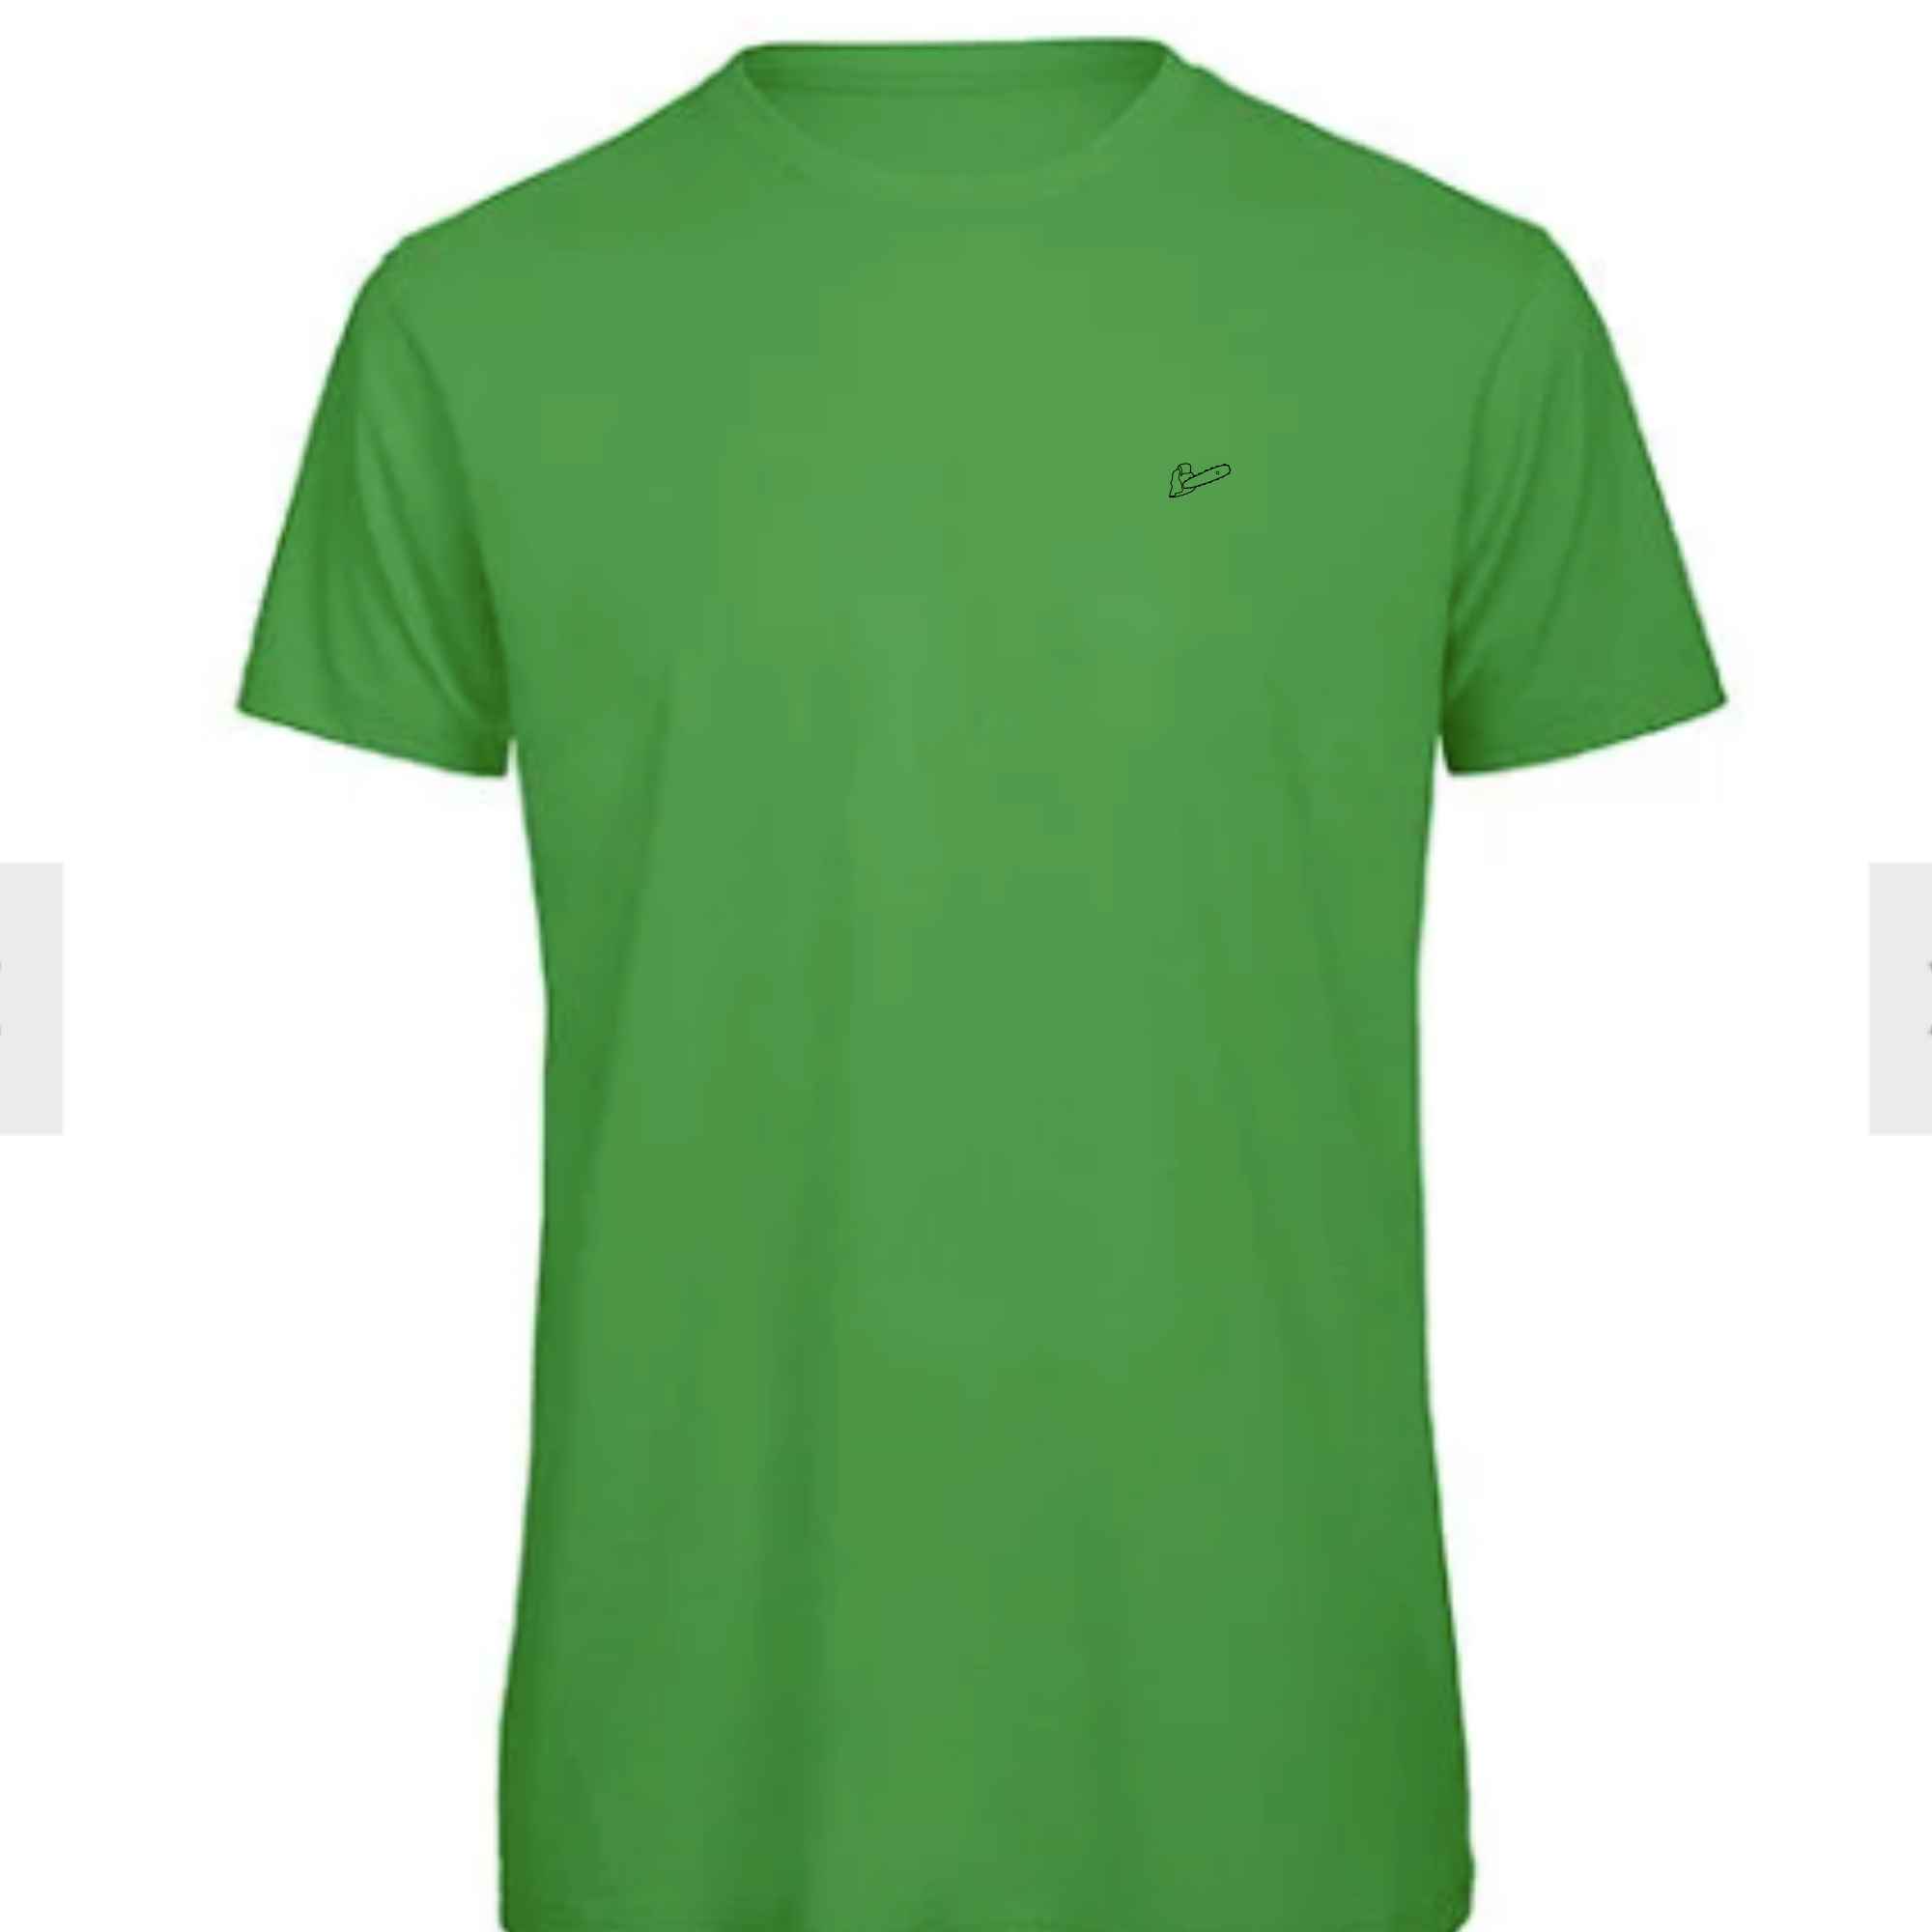 Grünes T-Shirt mit Kettensägen-Symbol bestickt für Waldarbeiter und Forstwirtschaft